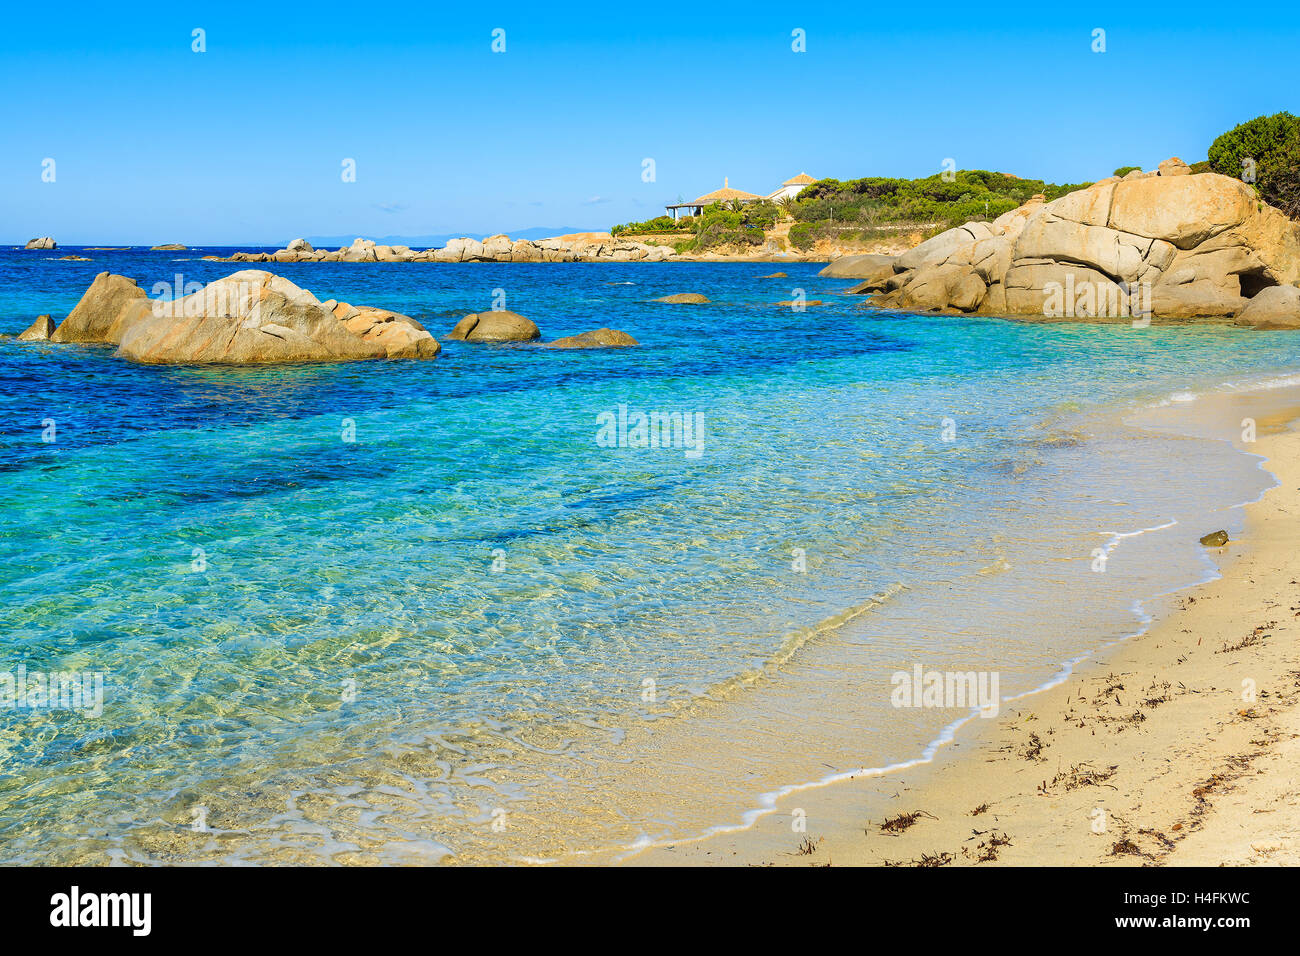 Ein Blick auf türkisfarbenes Meerwasser auf idyllischen Strand, Insel Sardinien, Italien Stockfoto